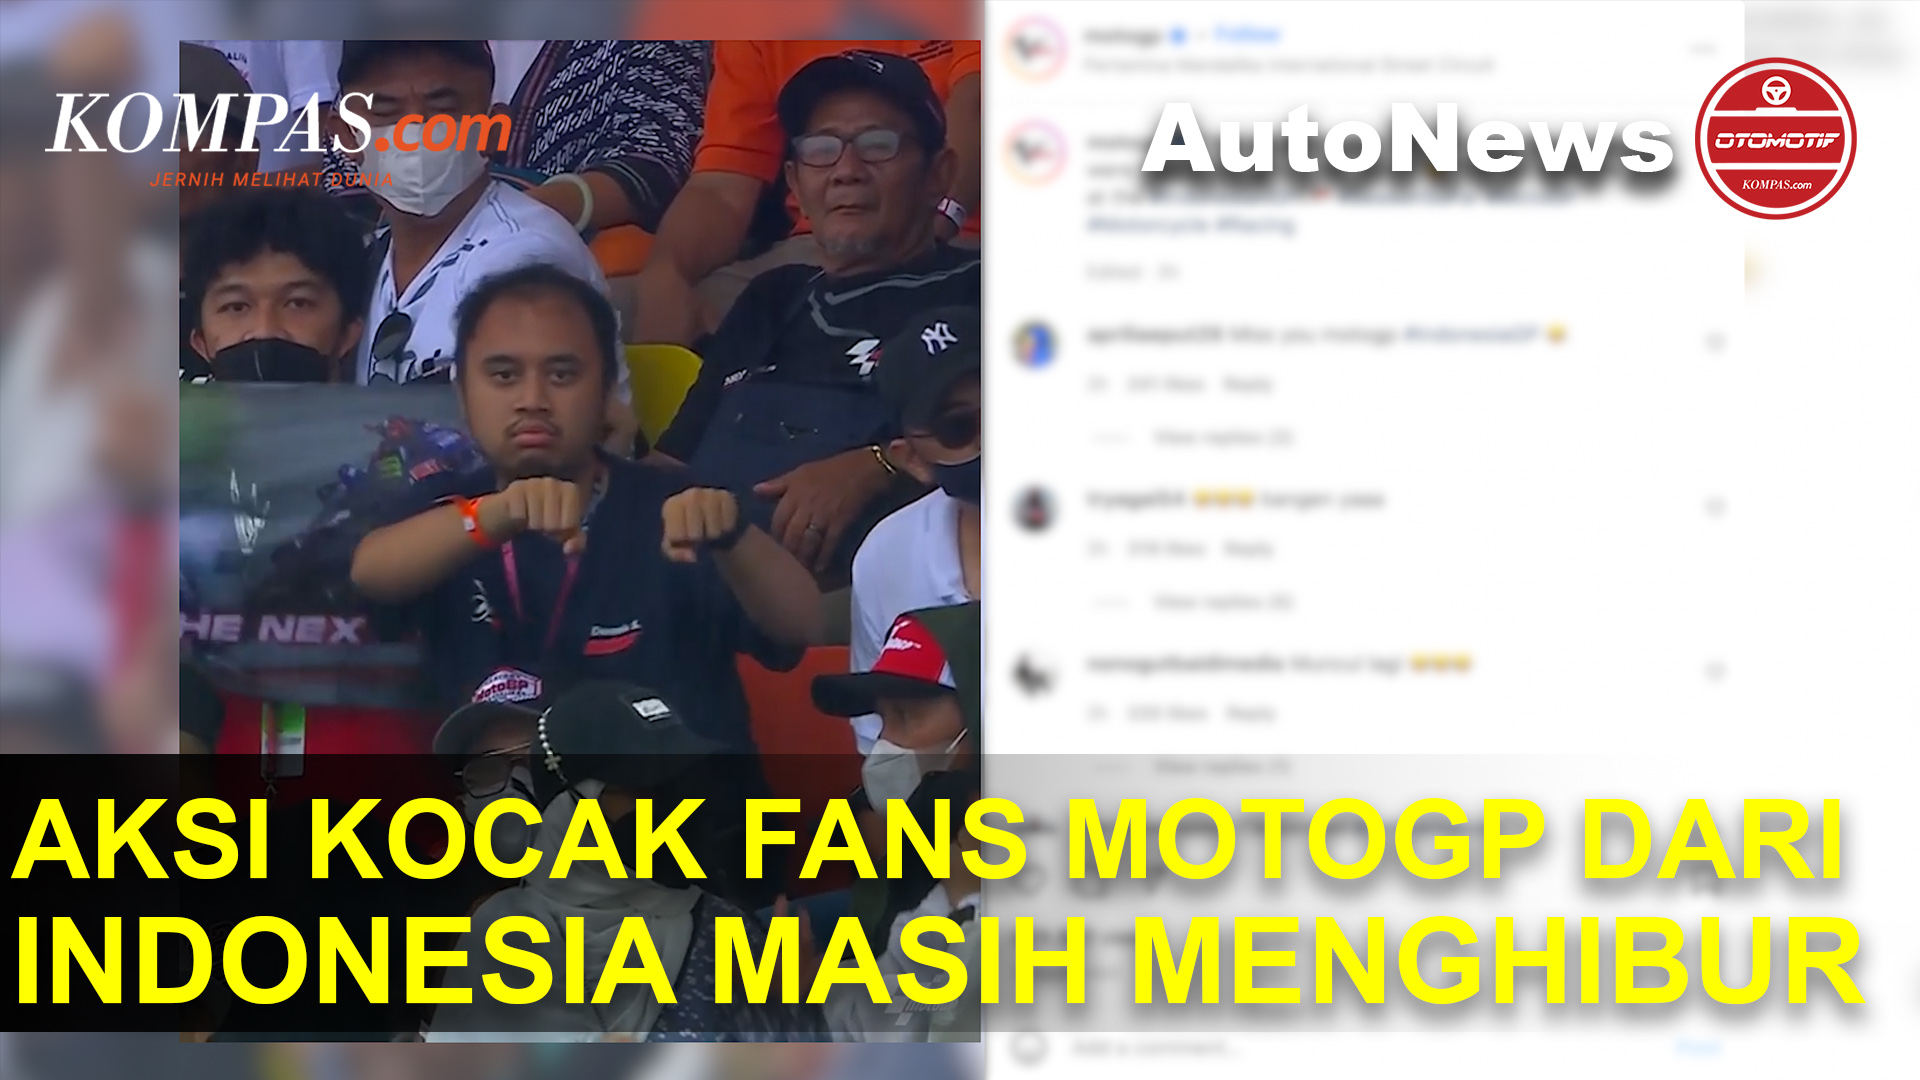 Ini Dia Aksi Kocak Fans MotoGP dari Indonesia, Ternyata Masih Cukup Menghibur